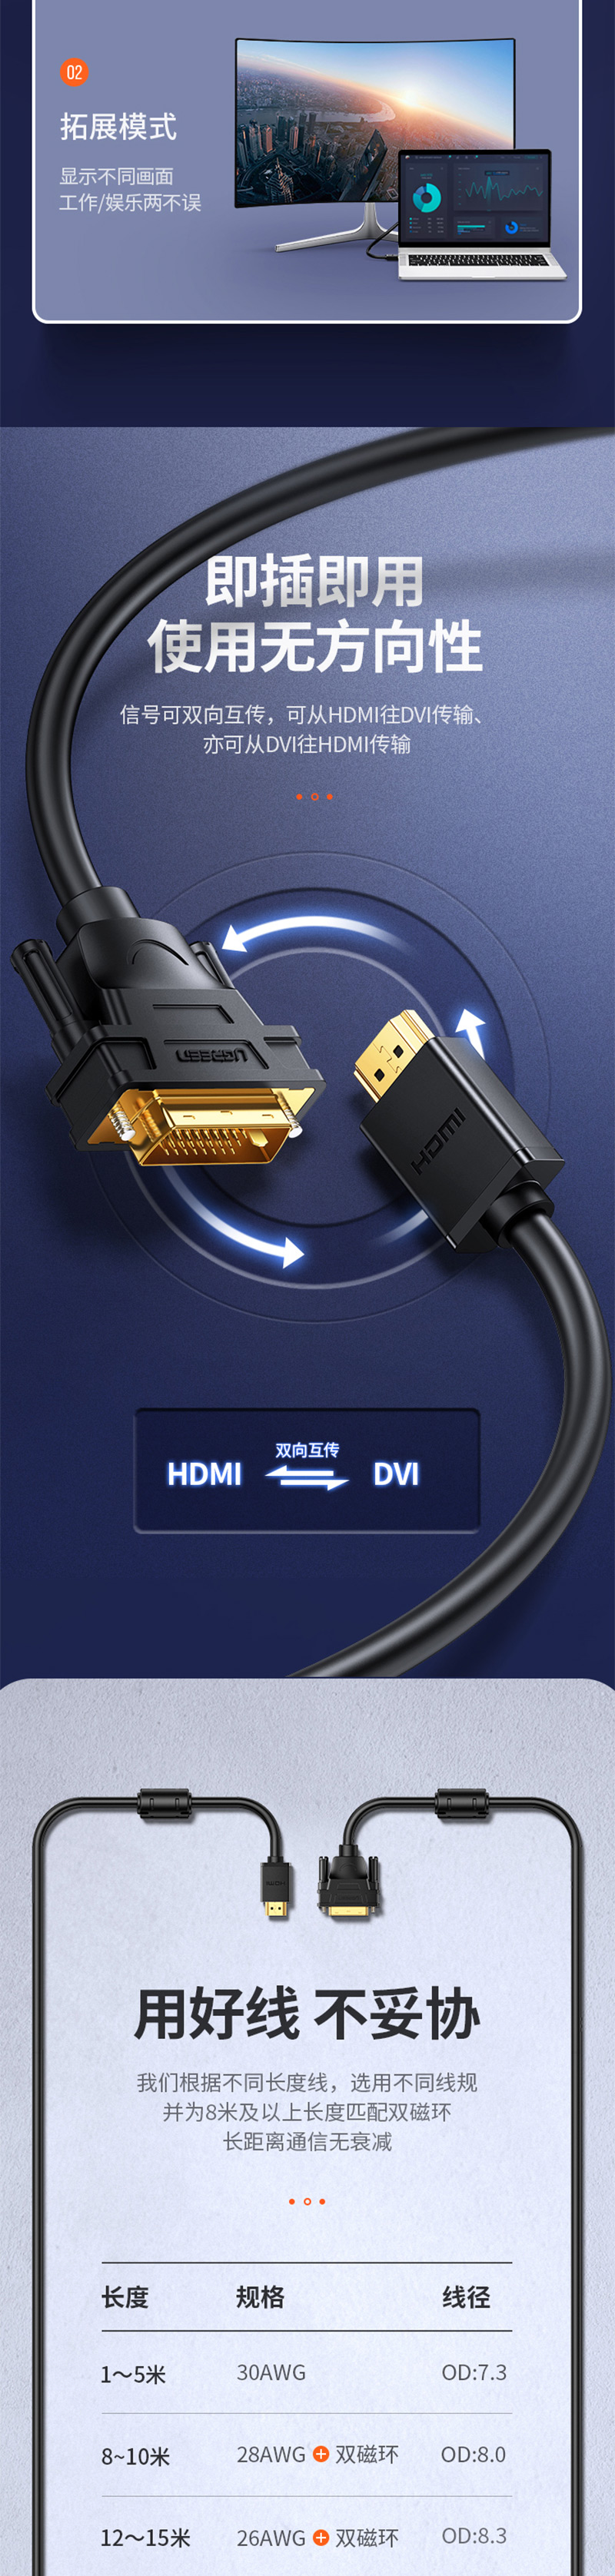 绿联10135 2米HDMI转DVI线 转换线 详情页